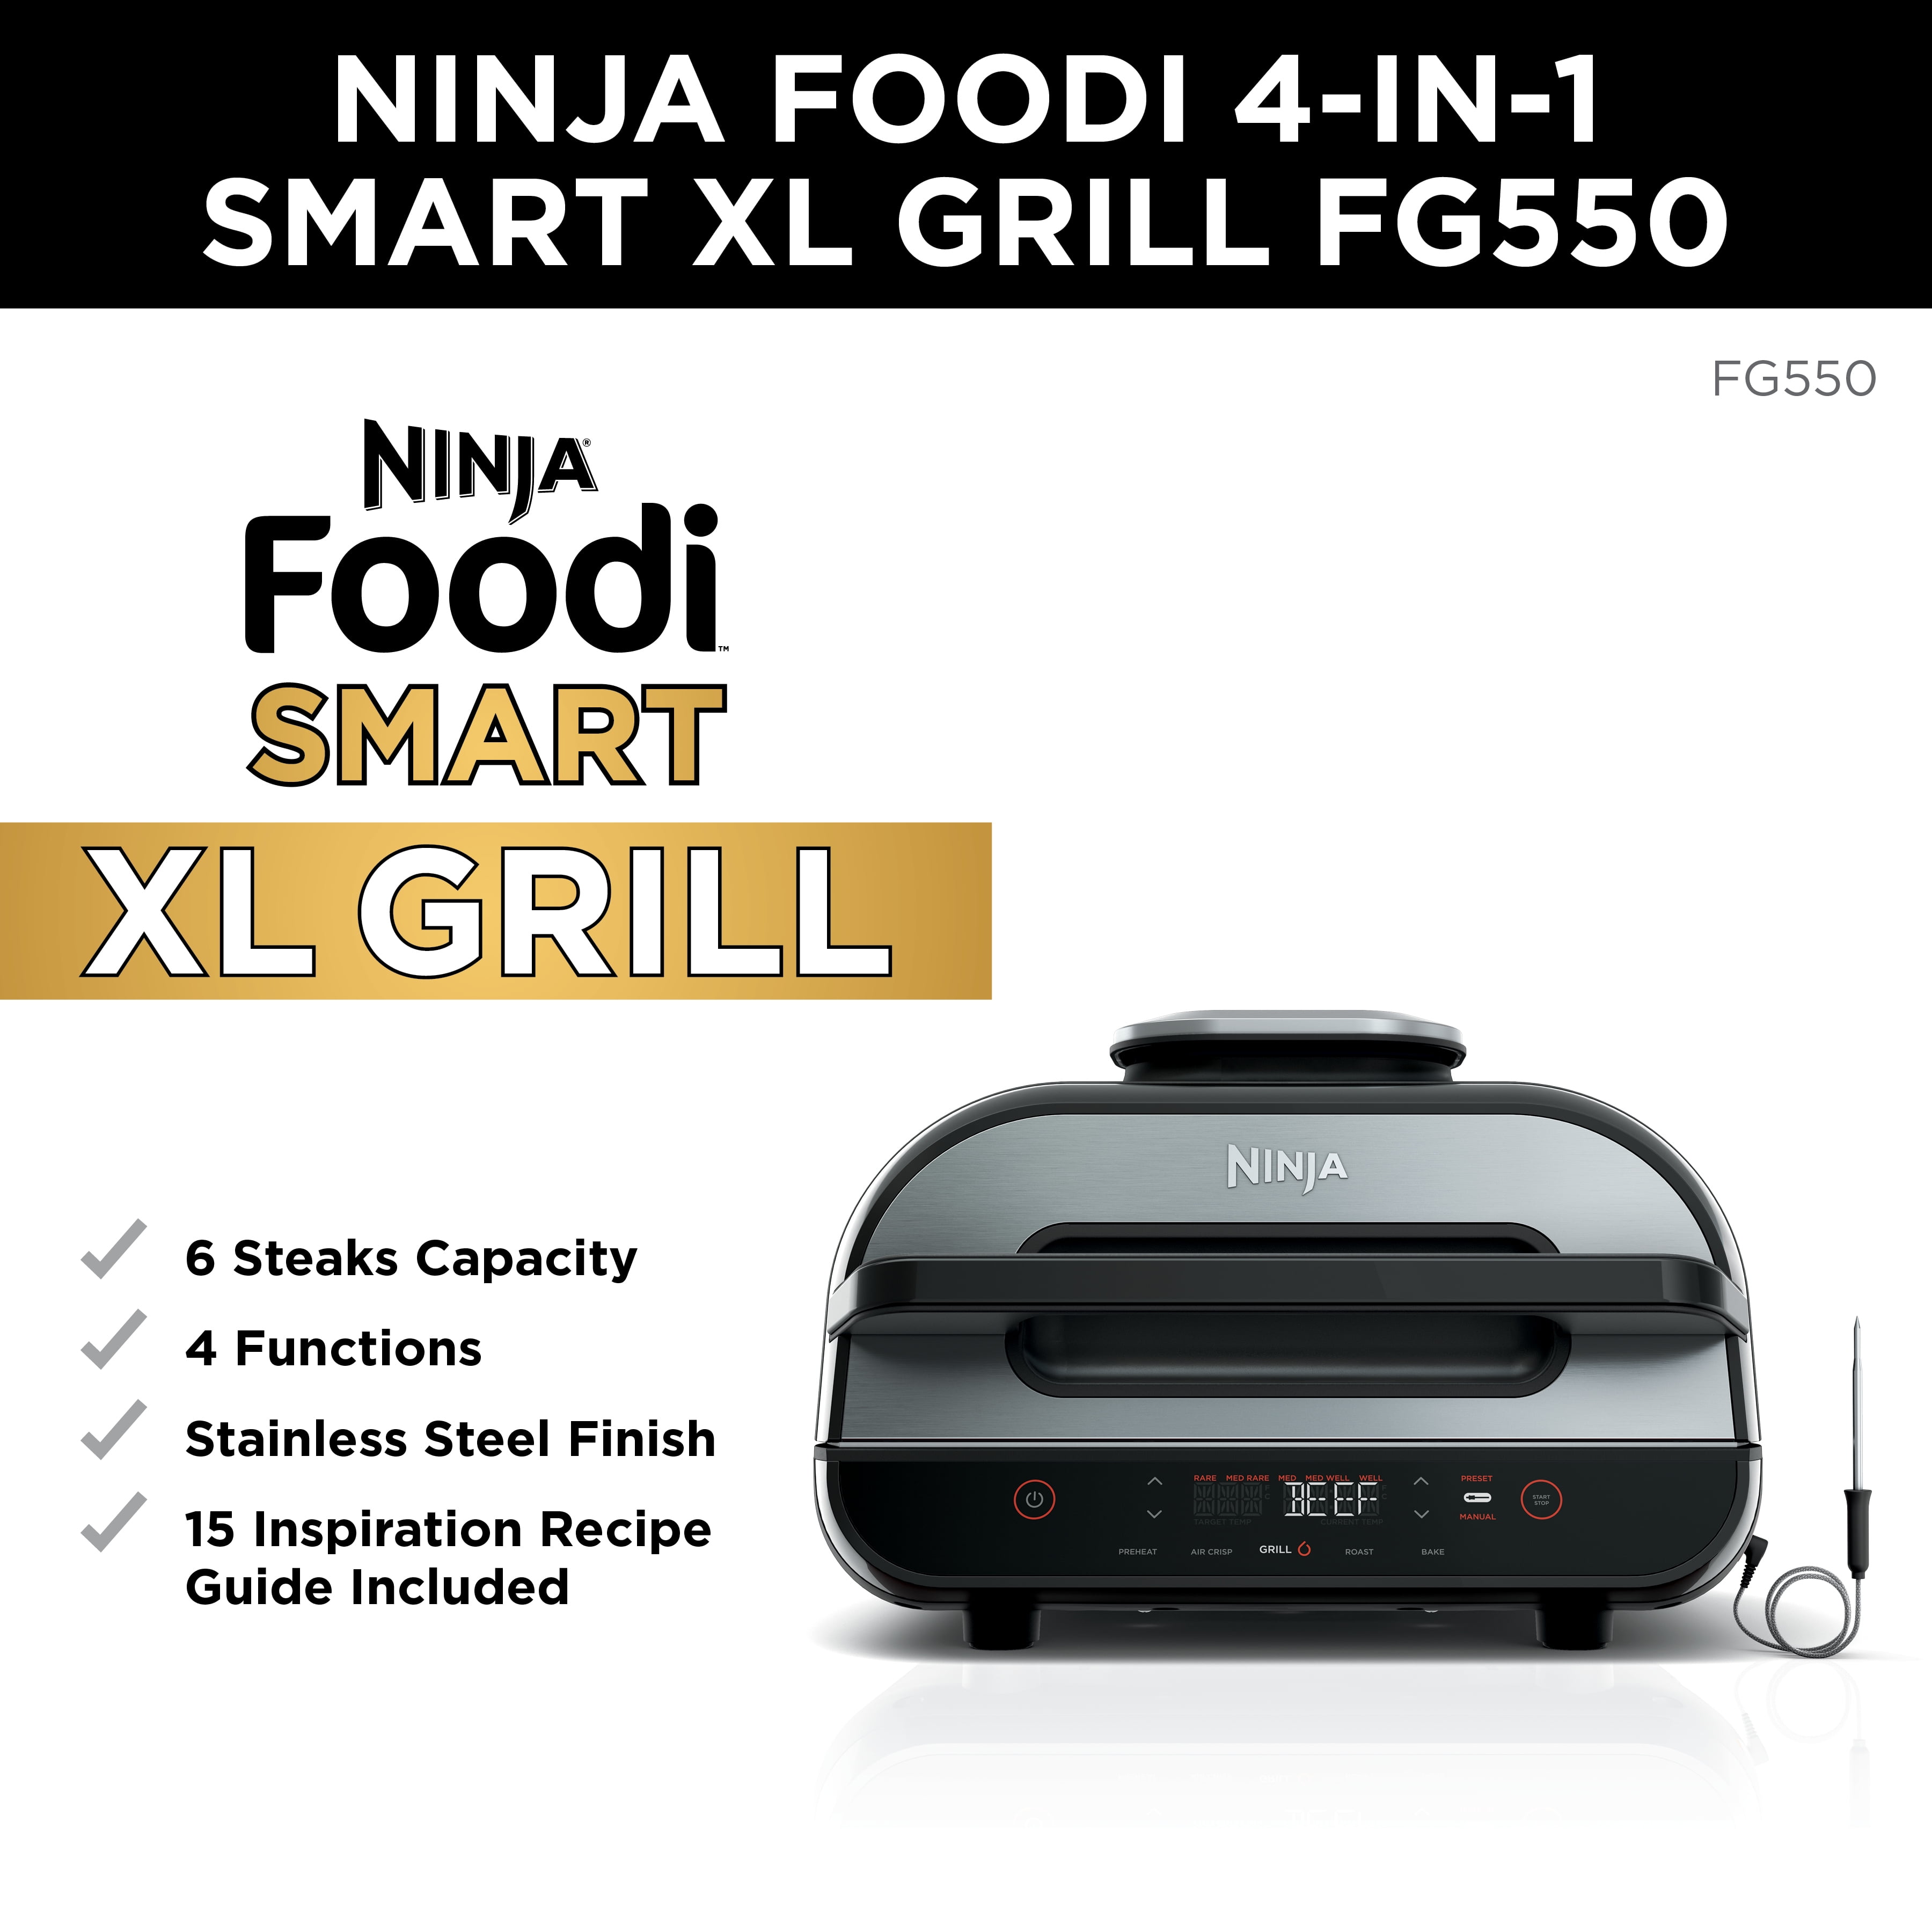 Ninja® Foodi Indoor Grill, 4 qt - Fry's Food Stores